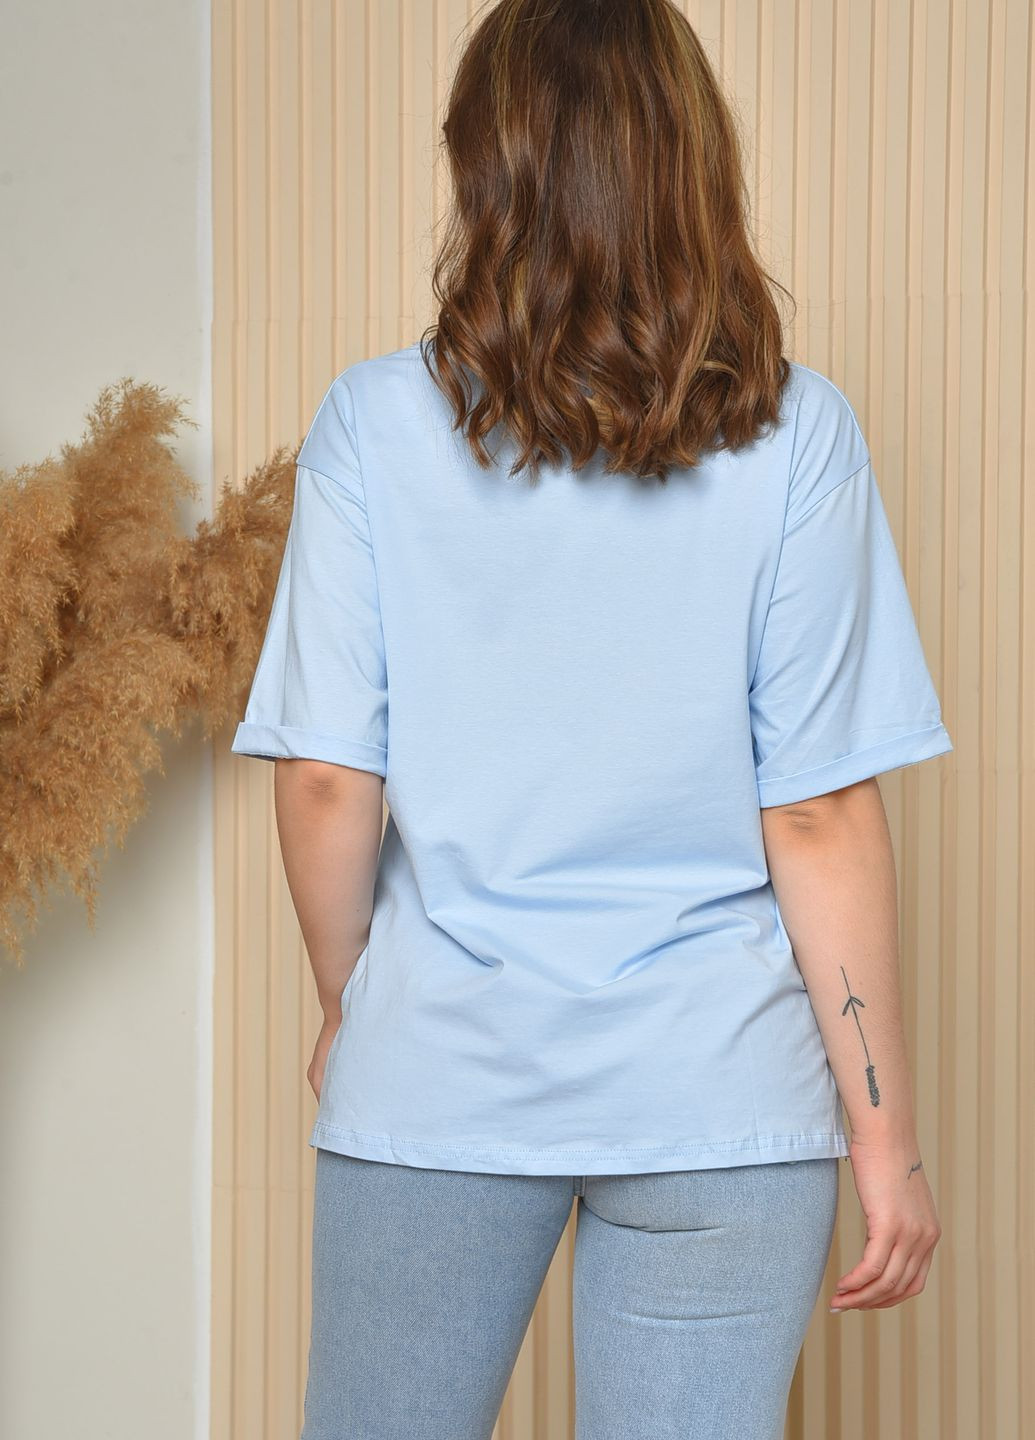 Голубая летняя футболка женская голубого цвета размер 44-46 Let's Shop